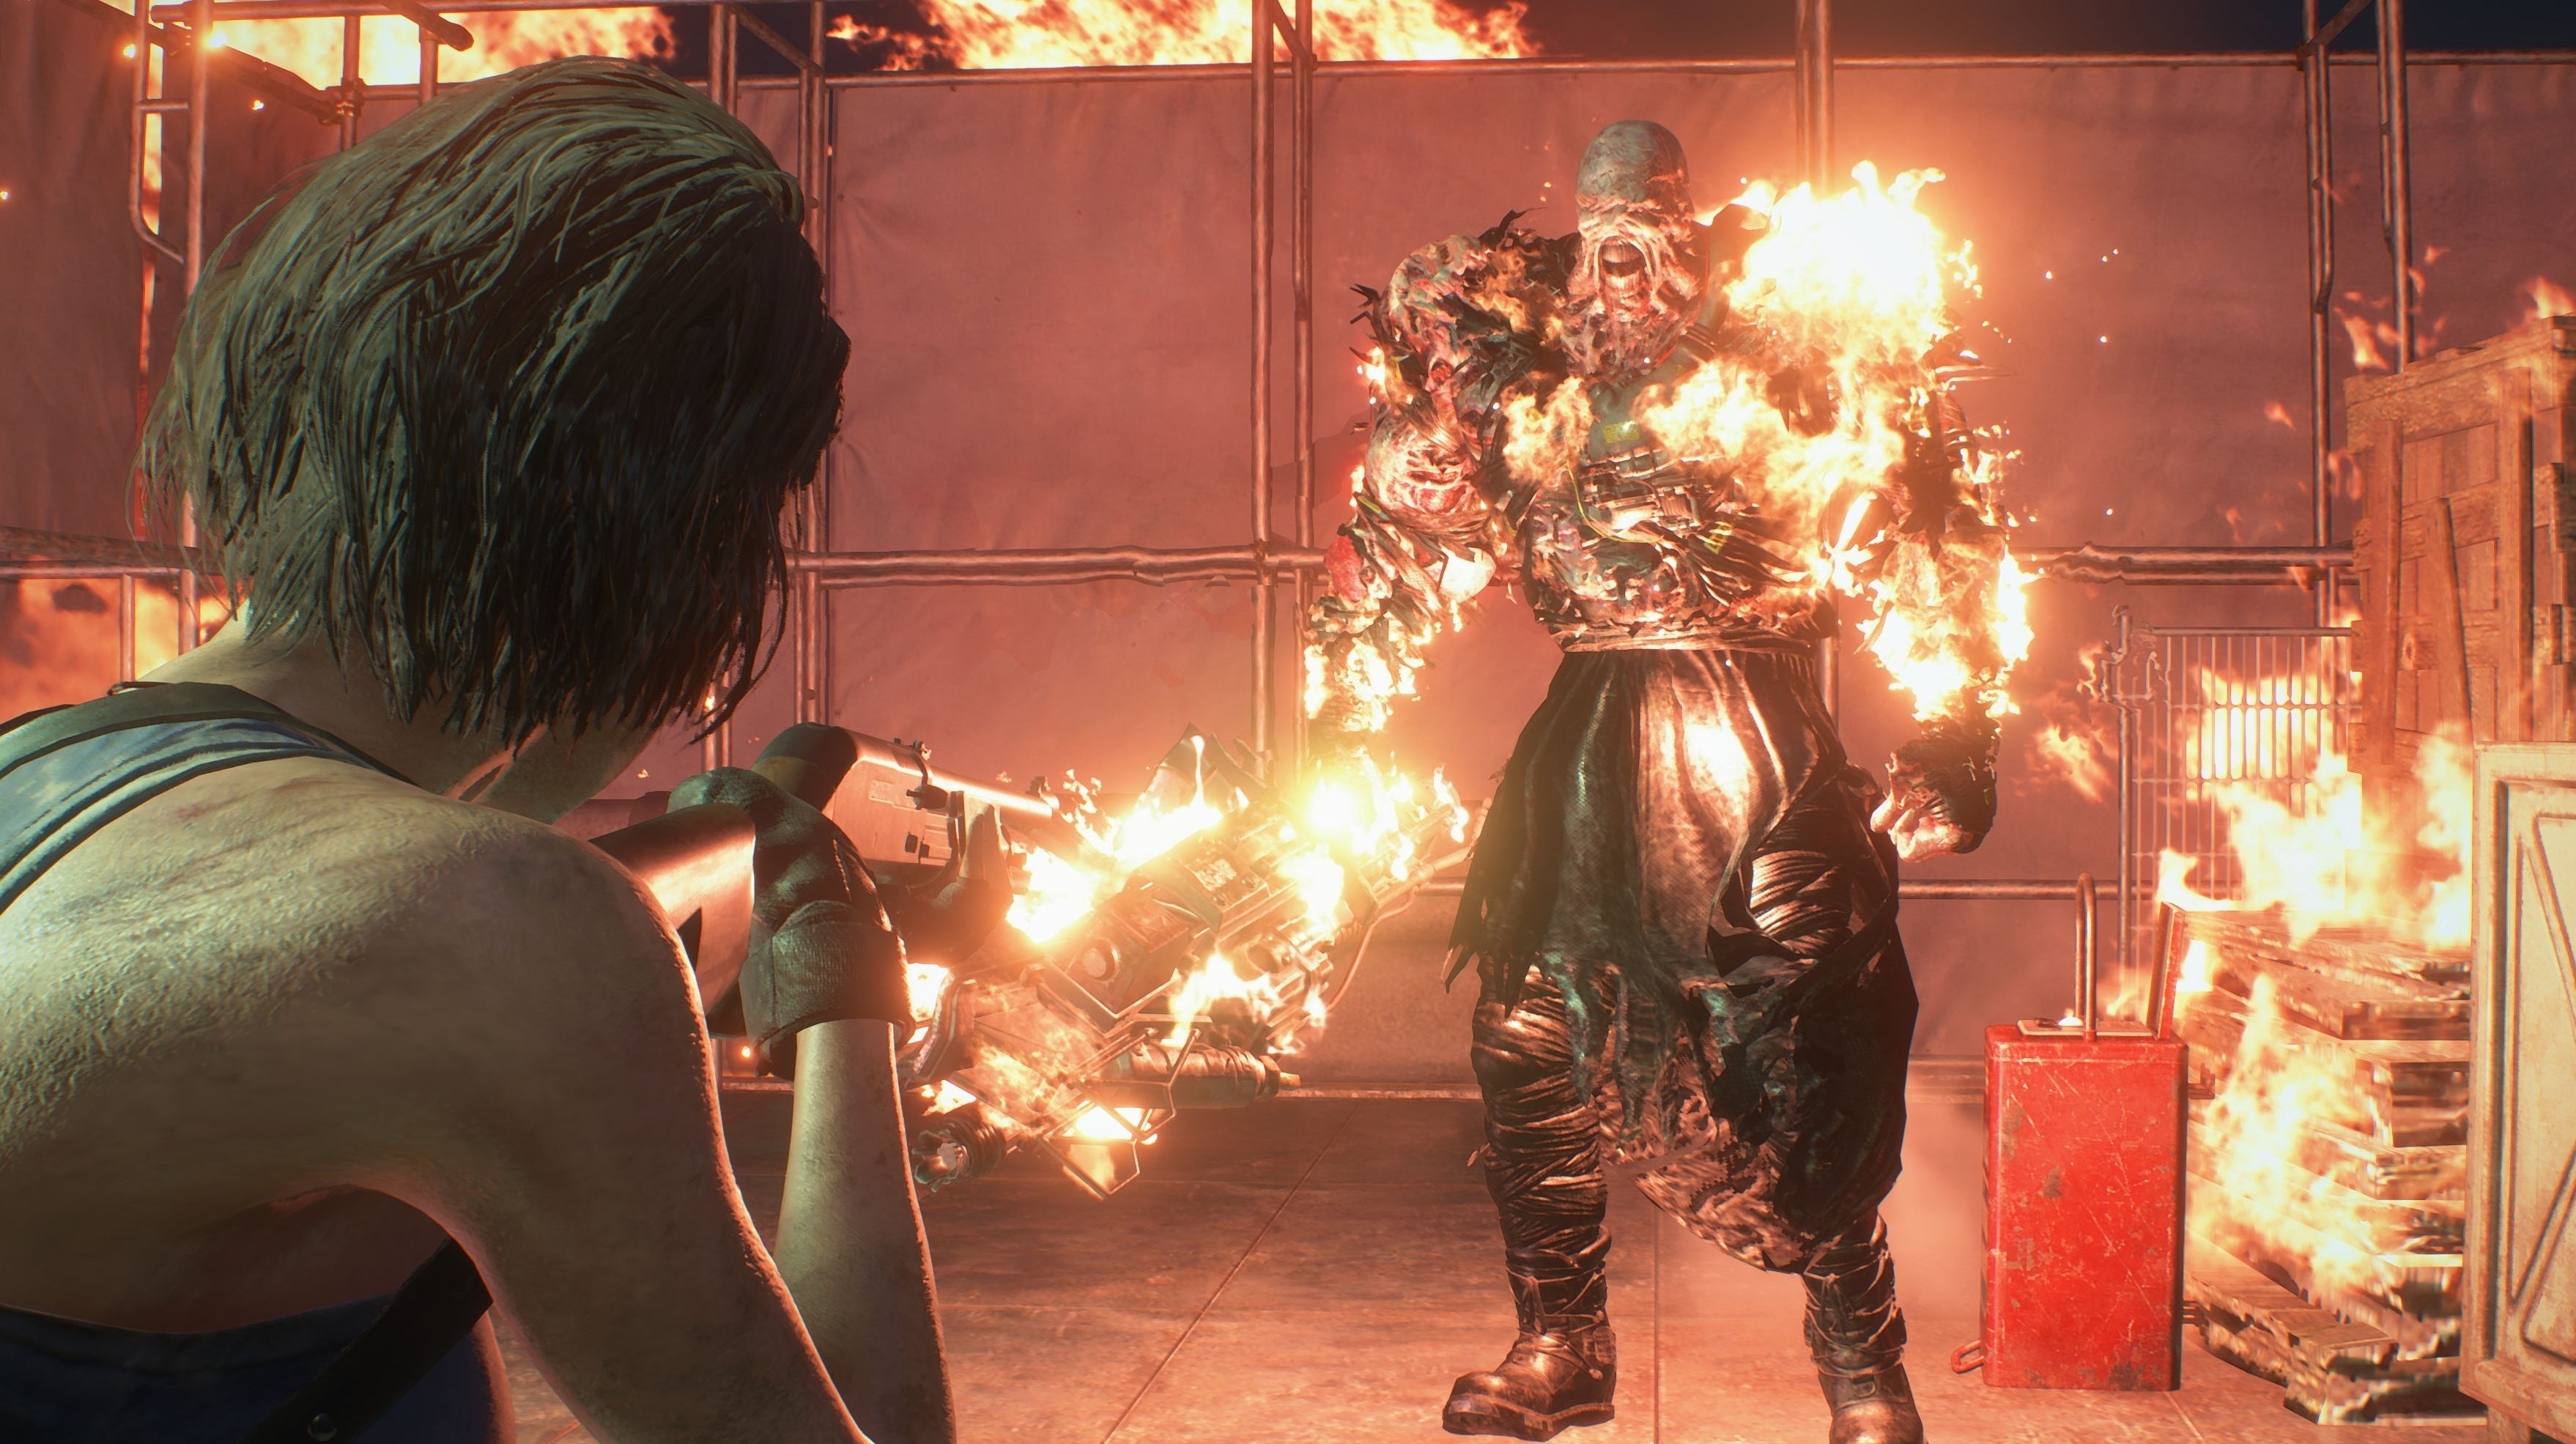 Image for Videosrovnání Resident Evil 3 remaku s originálem